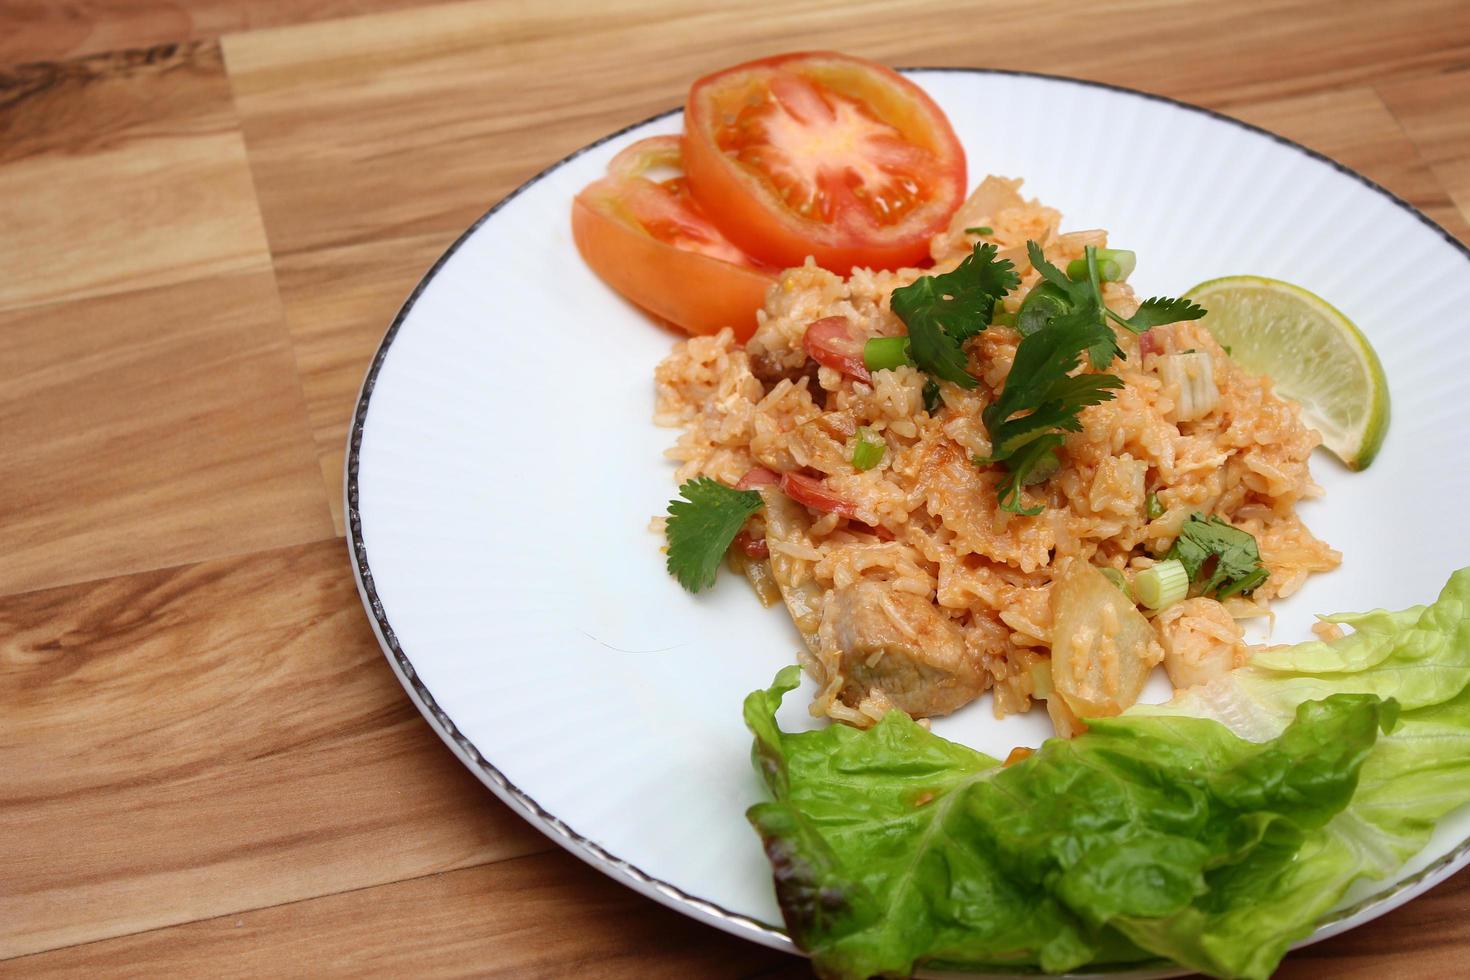 arroz frito de carne de porco e salsicha com cebola servido em um prato branco sobre uma mesa de madeira clara. foto